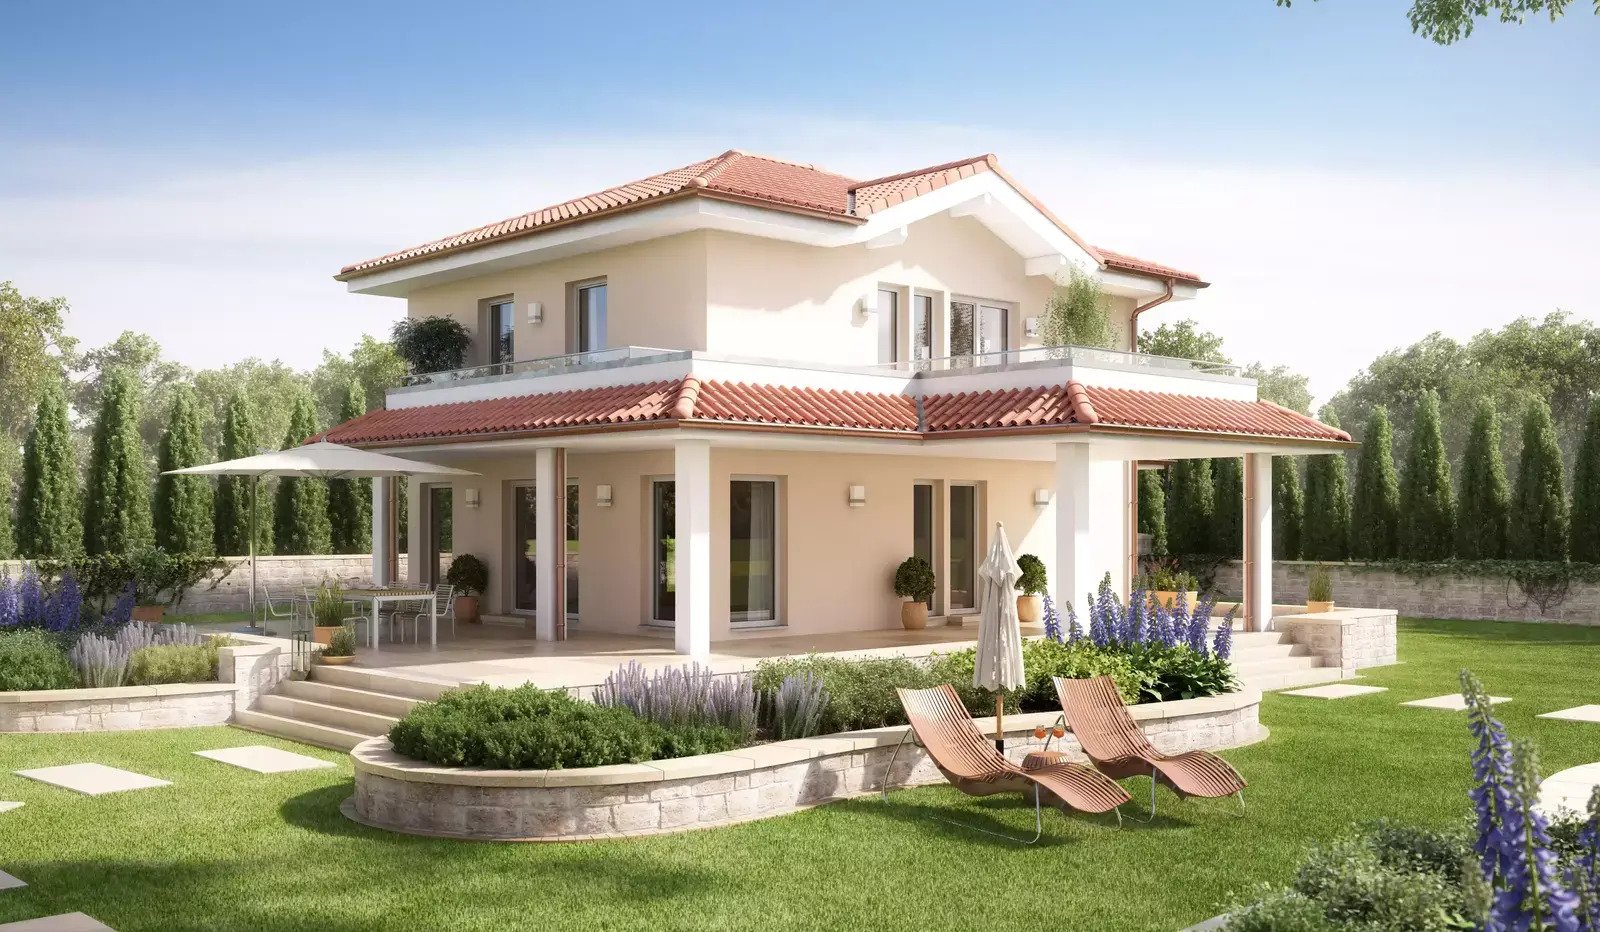 Wohnträume werde wahr in der Mediterrane Villa in ruhigem Baugebiet aus dem Hause Bien Zenker inkl. Baugrundstück